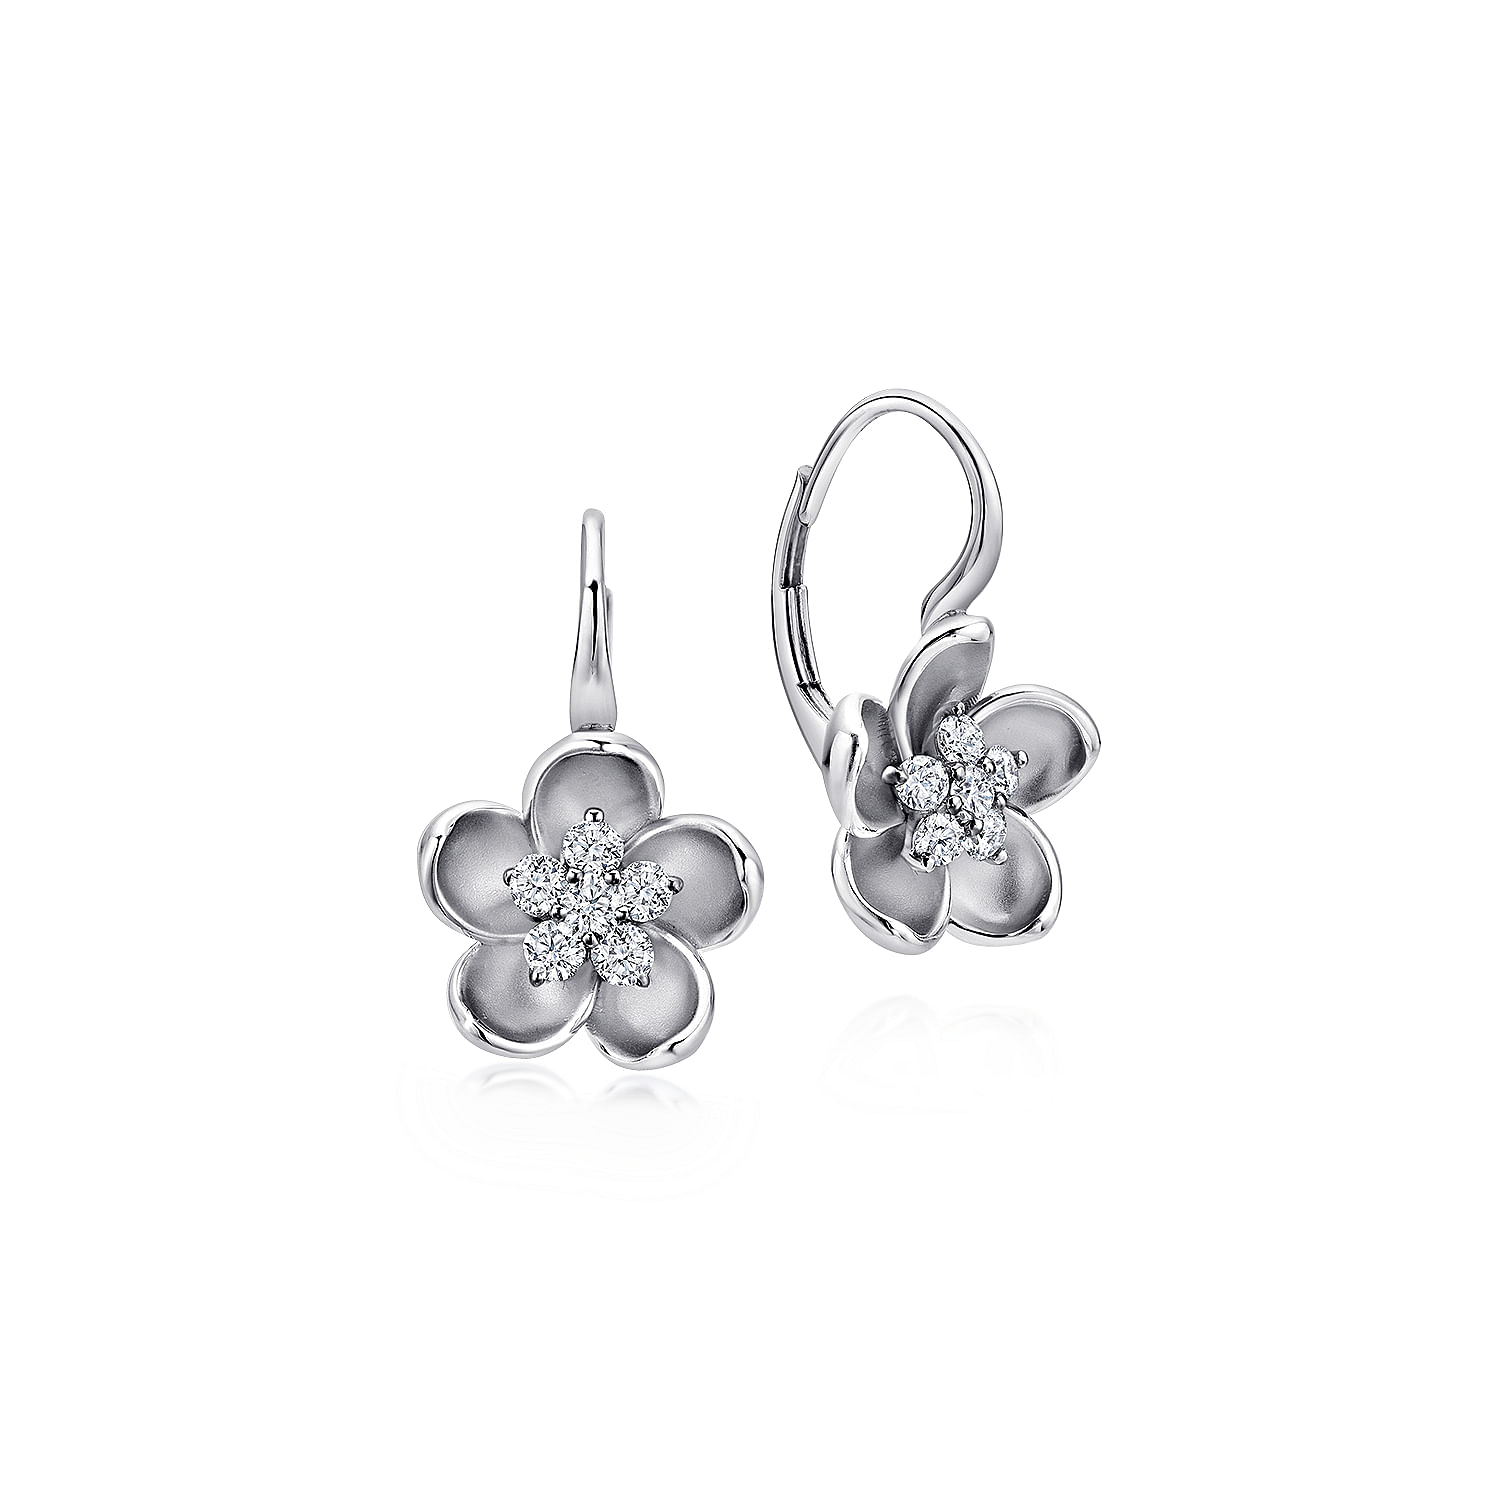 14K White Gold Leverback Flower Earrings with Diamond Center